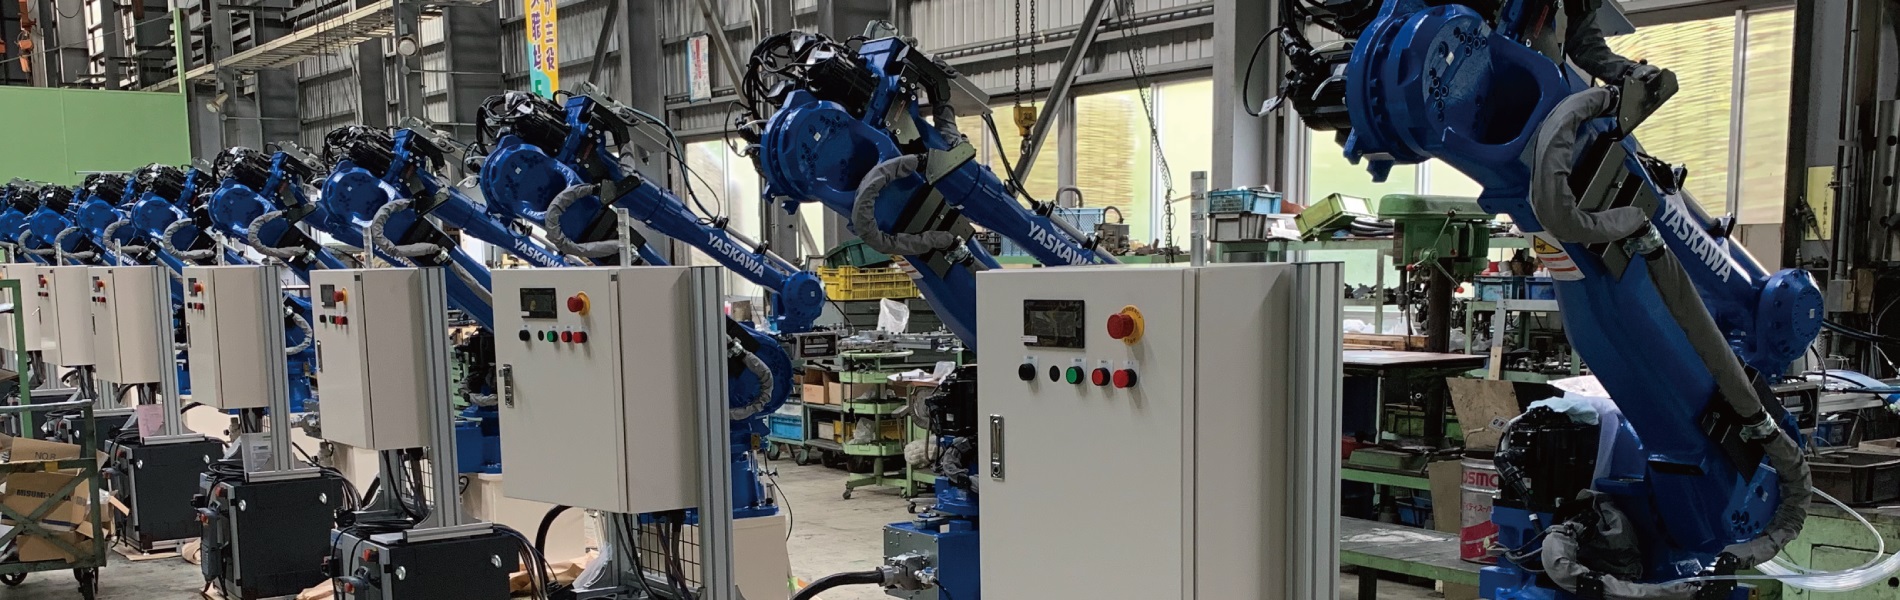 エヌテックでは、高い制御技術によりSCARAなど産業用ロボットによる生産ラインの構築も行っています。